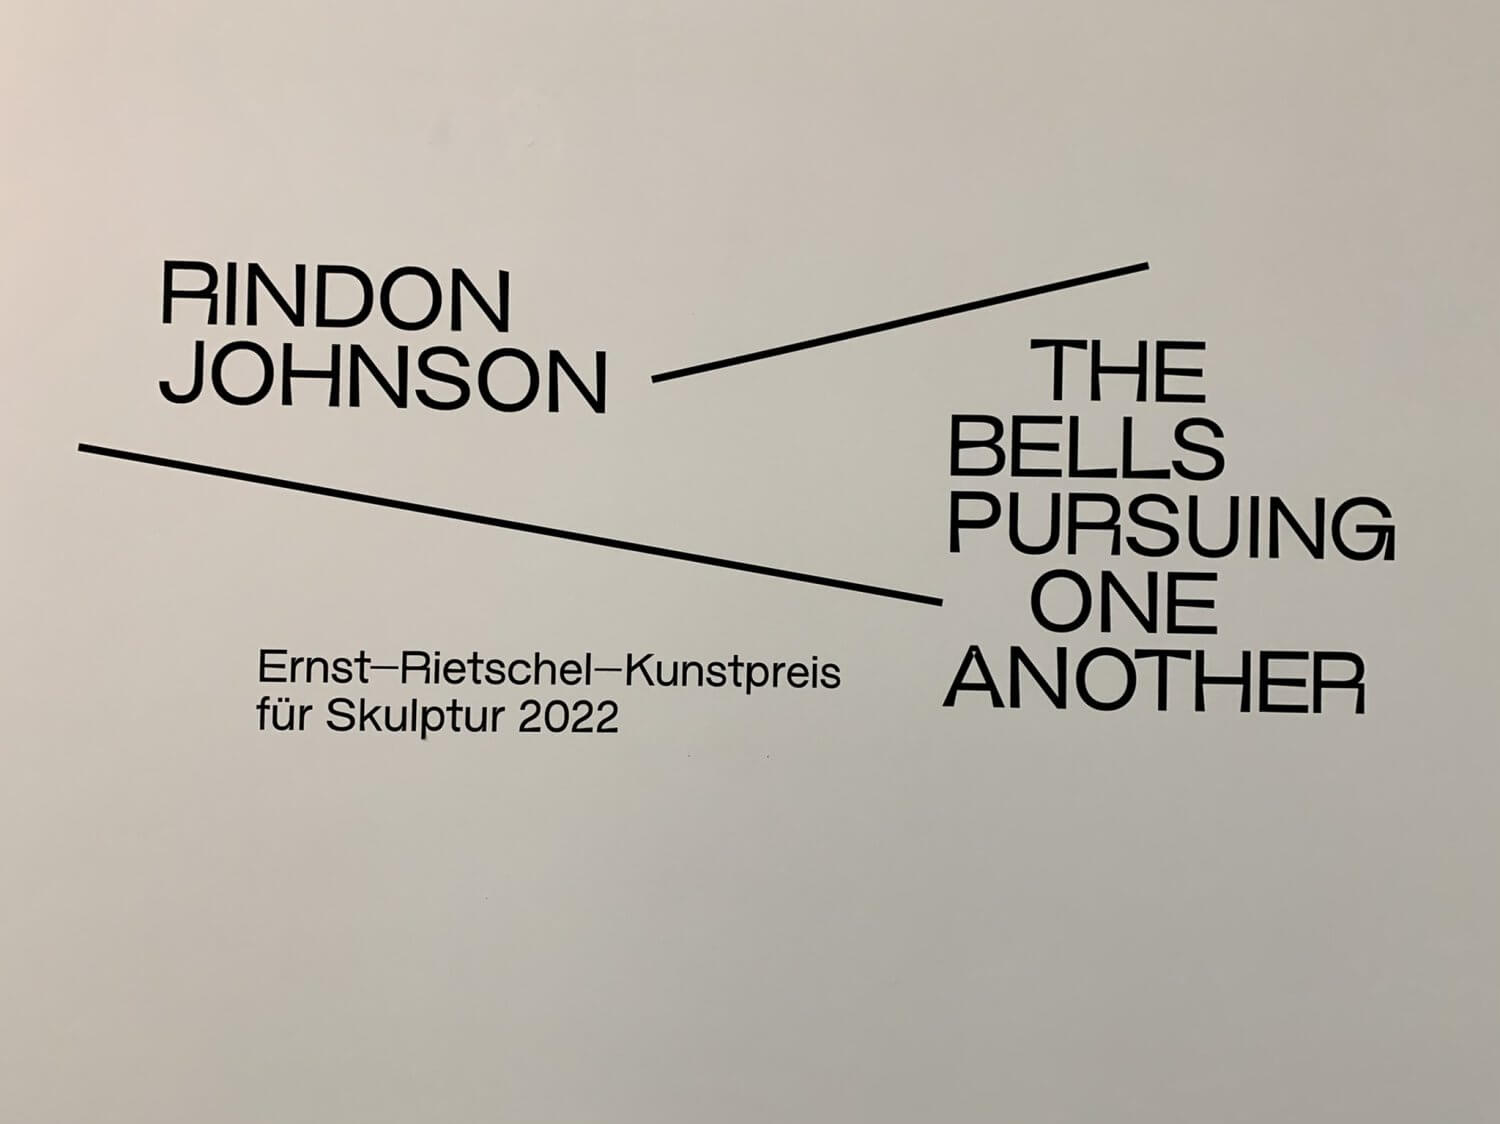 RINDON JOHNSON &#8211; US-amerikanischer Künstler &#8211; Ernst-Rietschel-Kunstpreisträger für Skulptur 2022